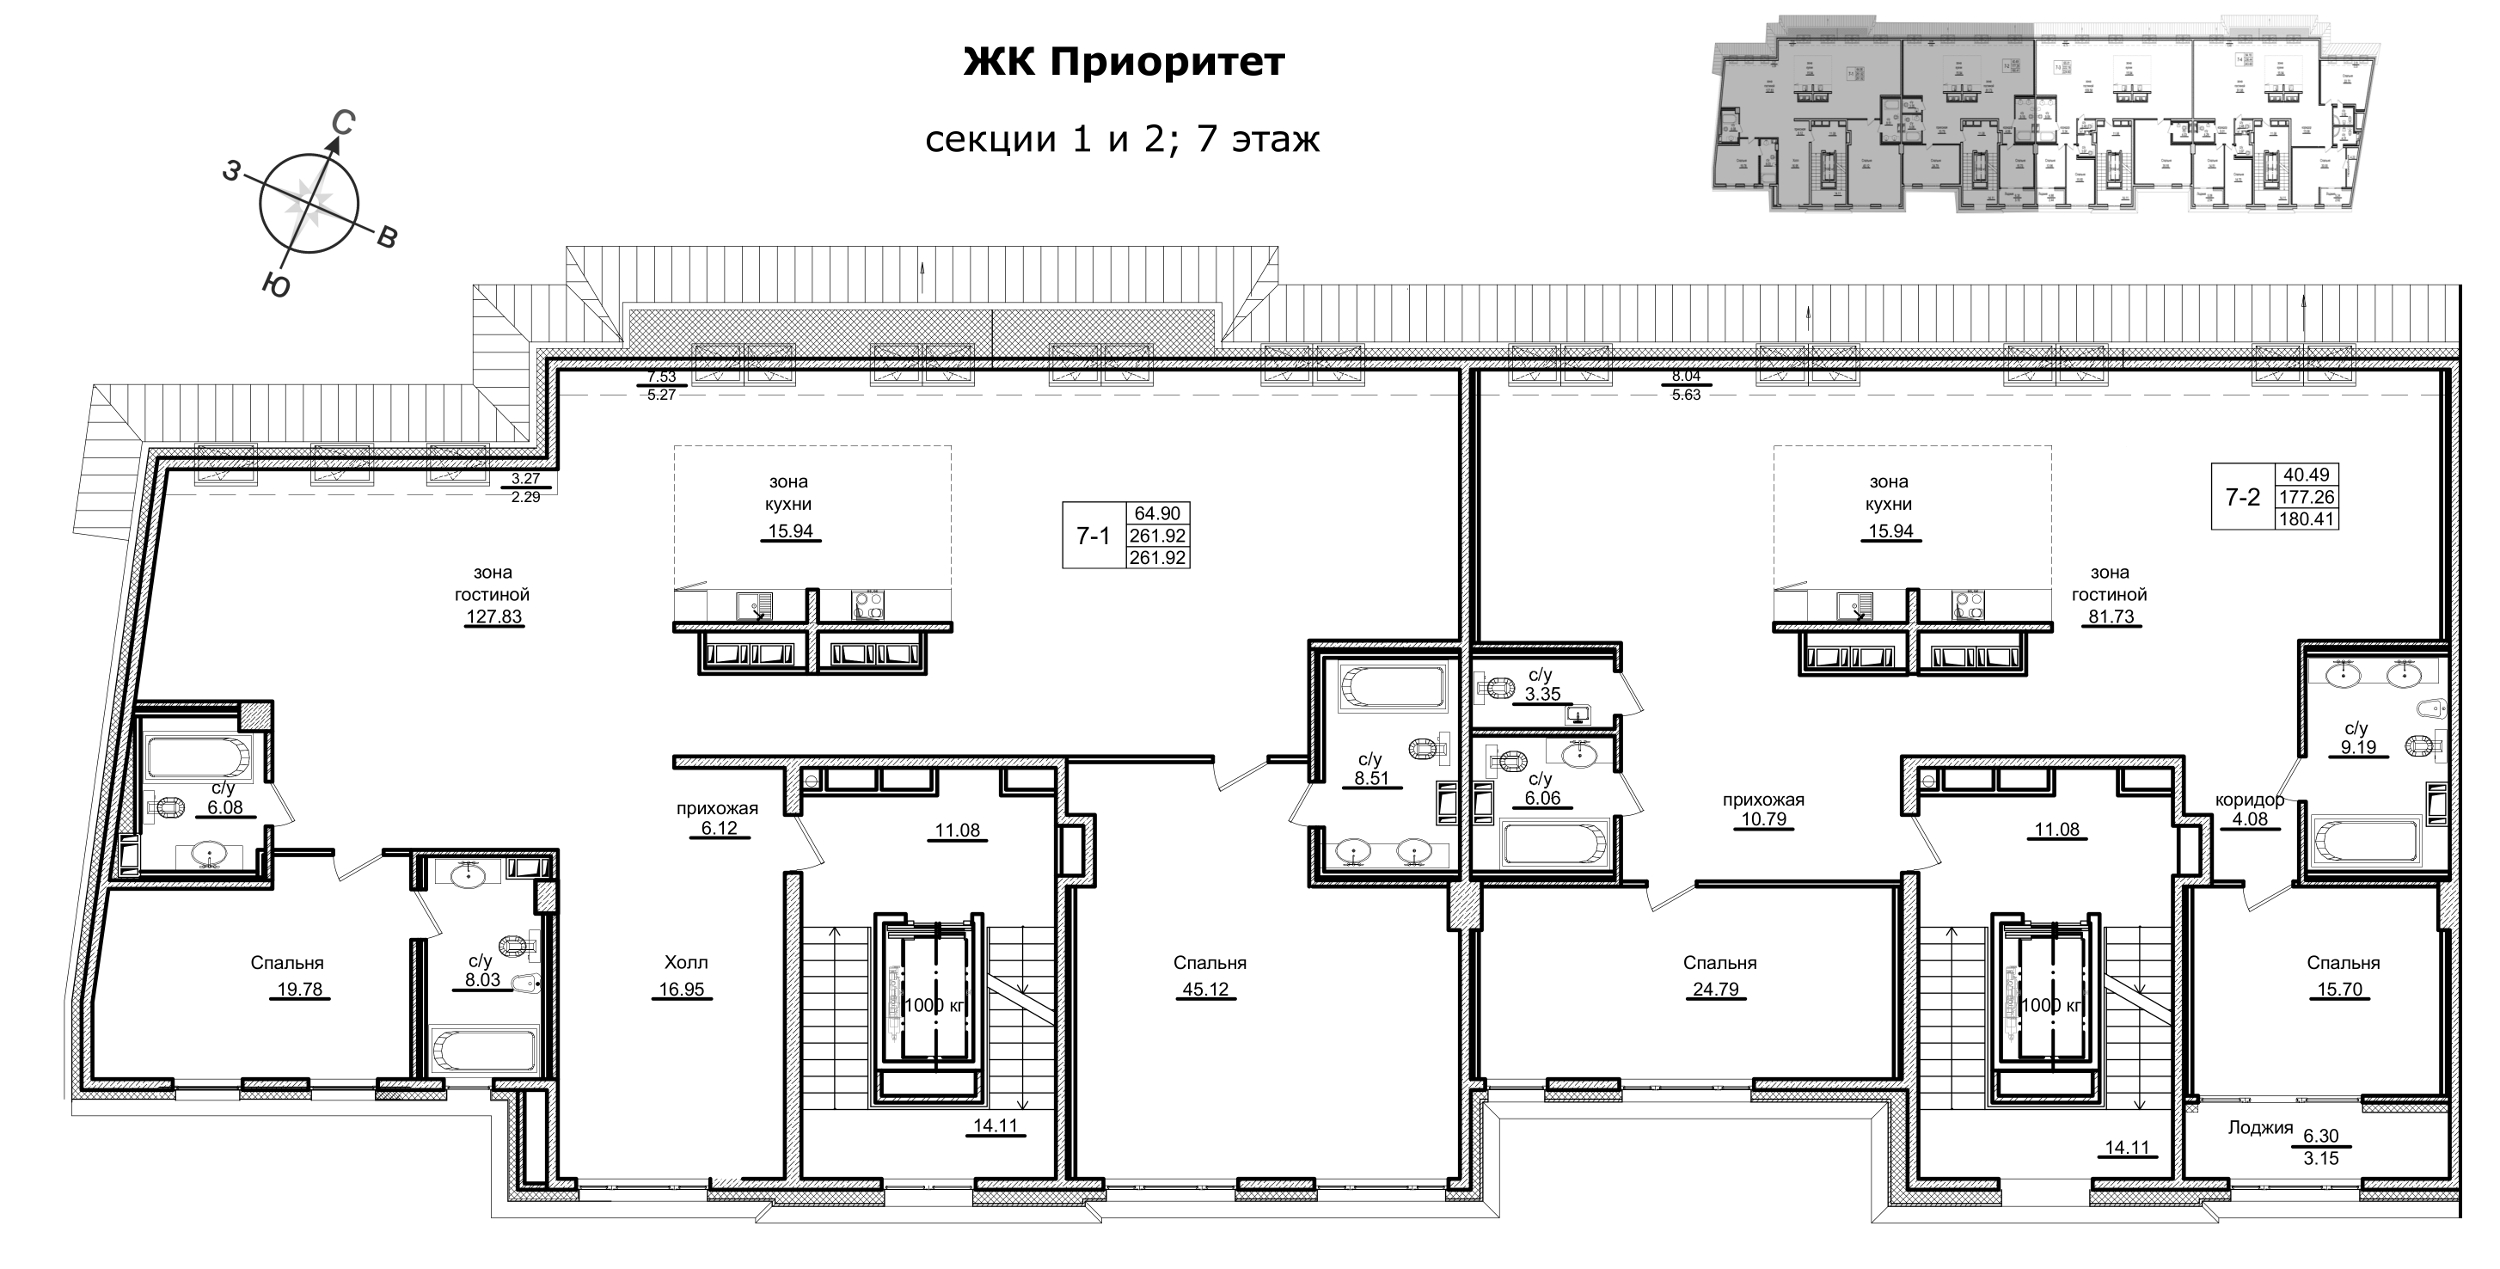 3-комнатная (Евро) квартира, 180.8 м² в ЖК "Приоритет" - планировка этажа